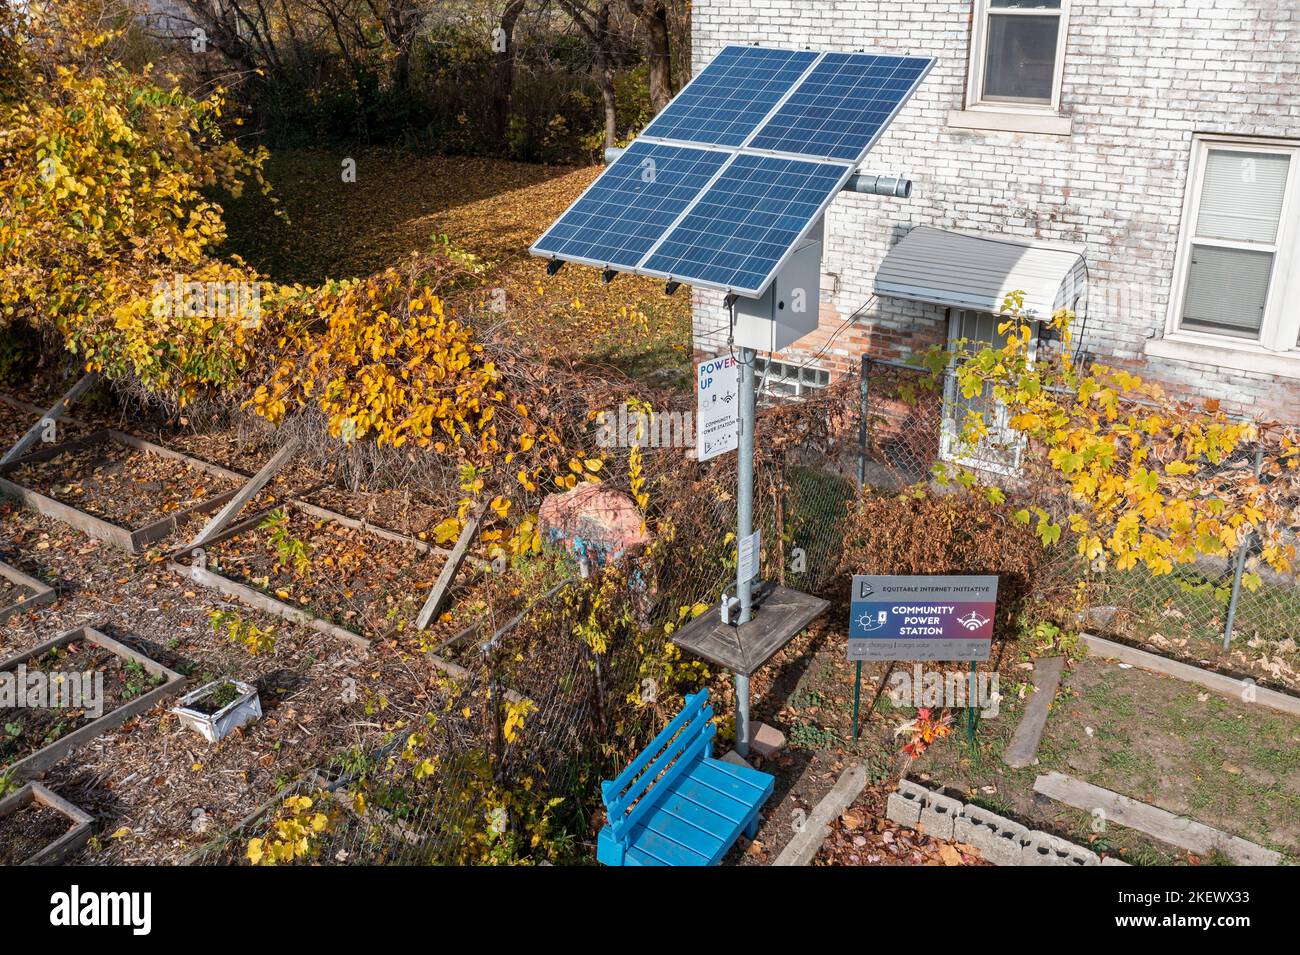 Detroit, Michigan - Eine solarbetriebene wi-Fi- und Ladestation für elektronische Geräte im Viertel Islandview in Detroit. Diese Community Power Stati Stockfoto